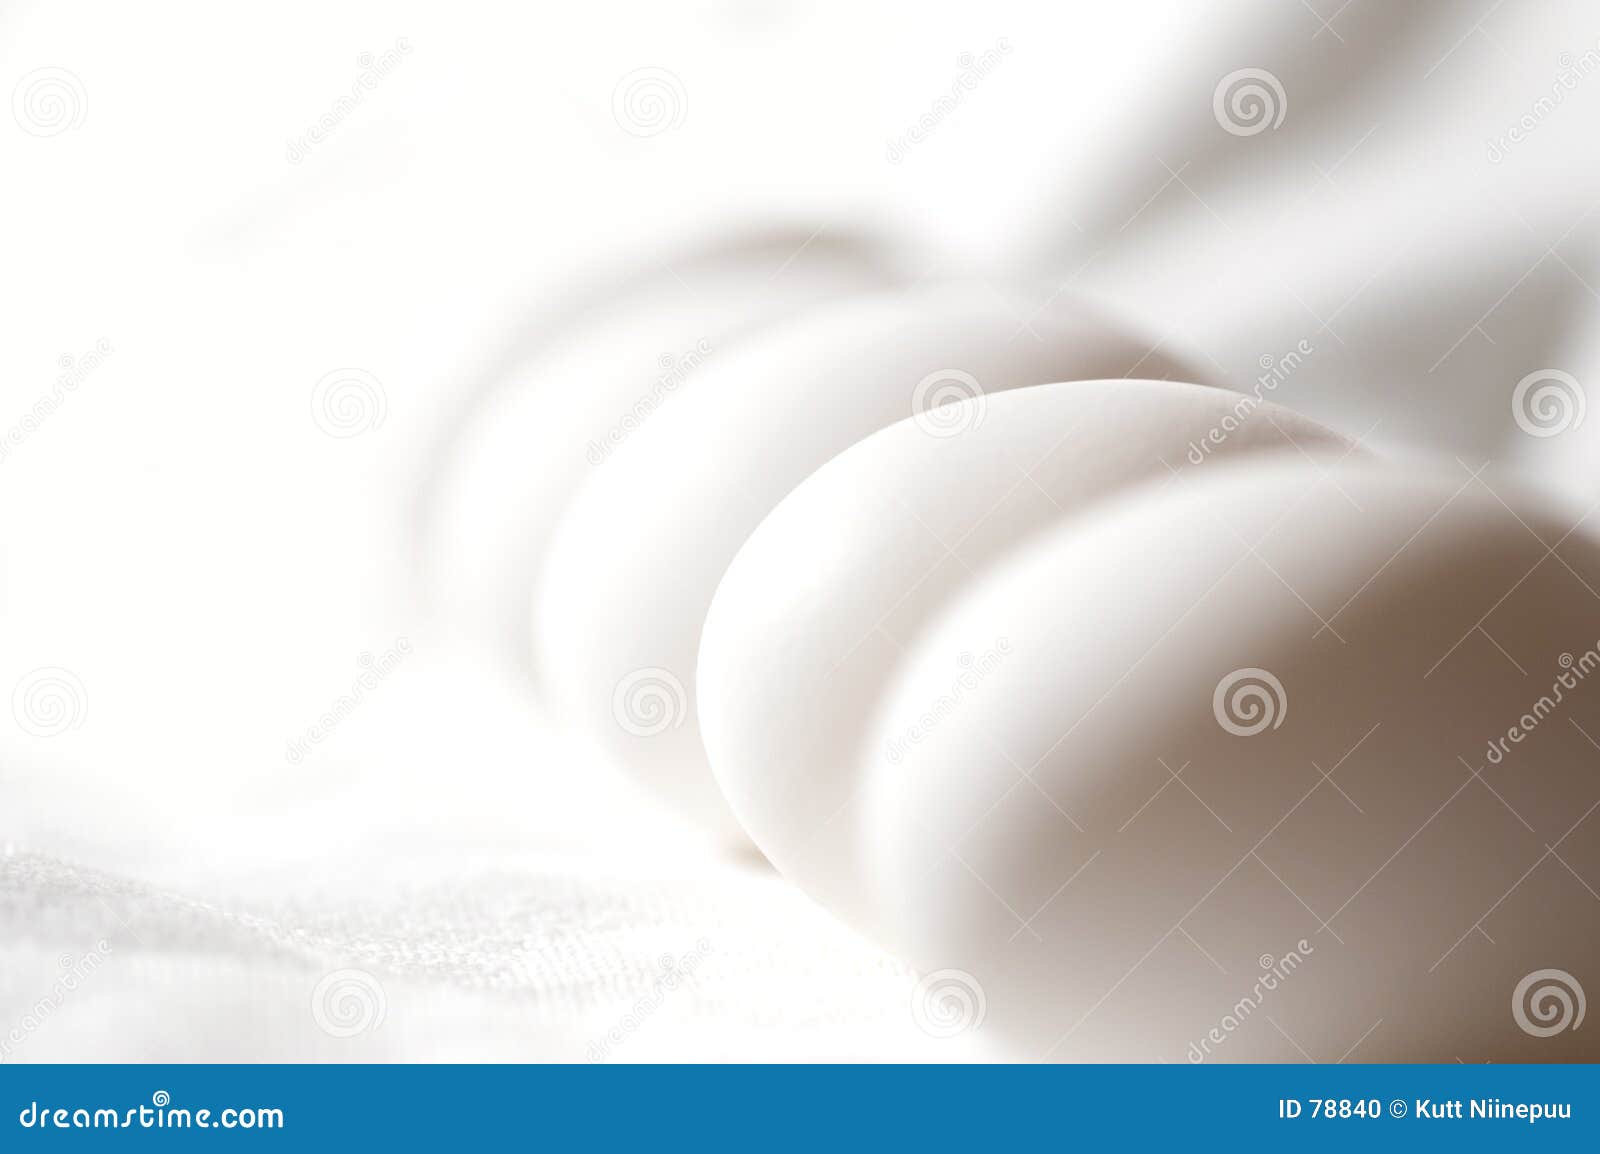 pure white eggs